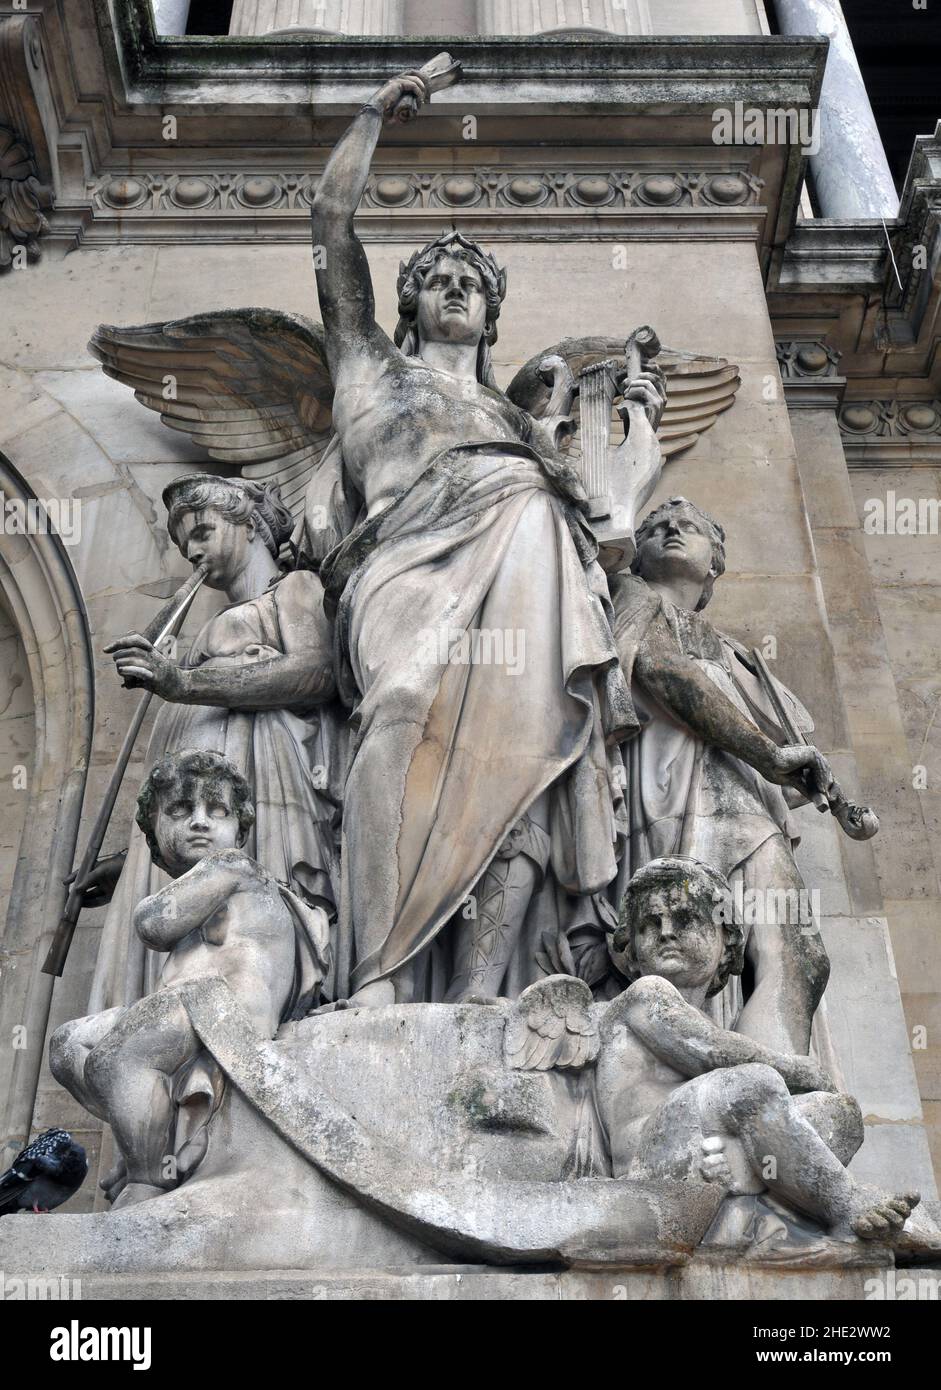 Jean-Baptiste Claude Eugène Guillaume's sculpture La musique instrumentale stands outside the landmark Palais Garnier opera house in Paris. Stock Photo